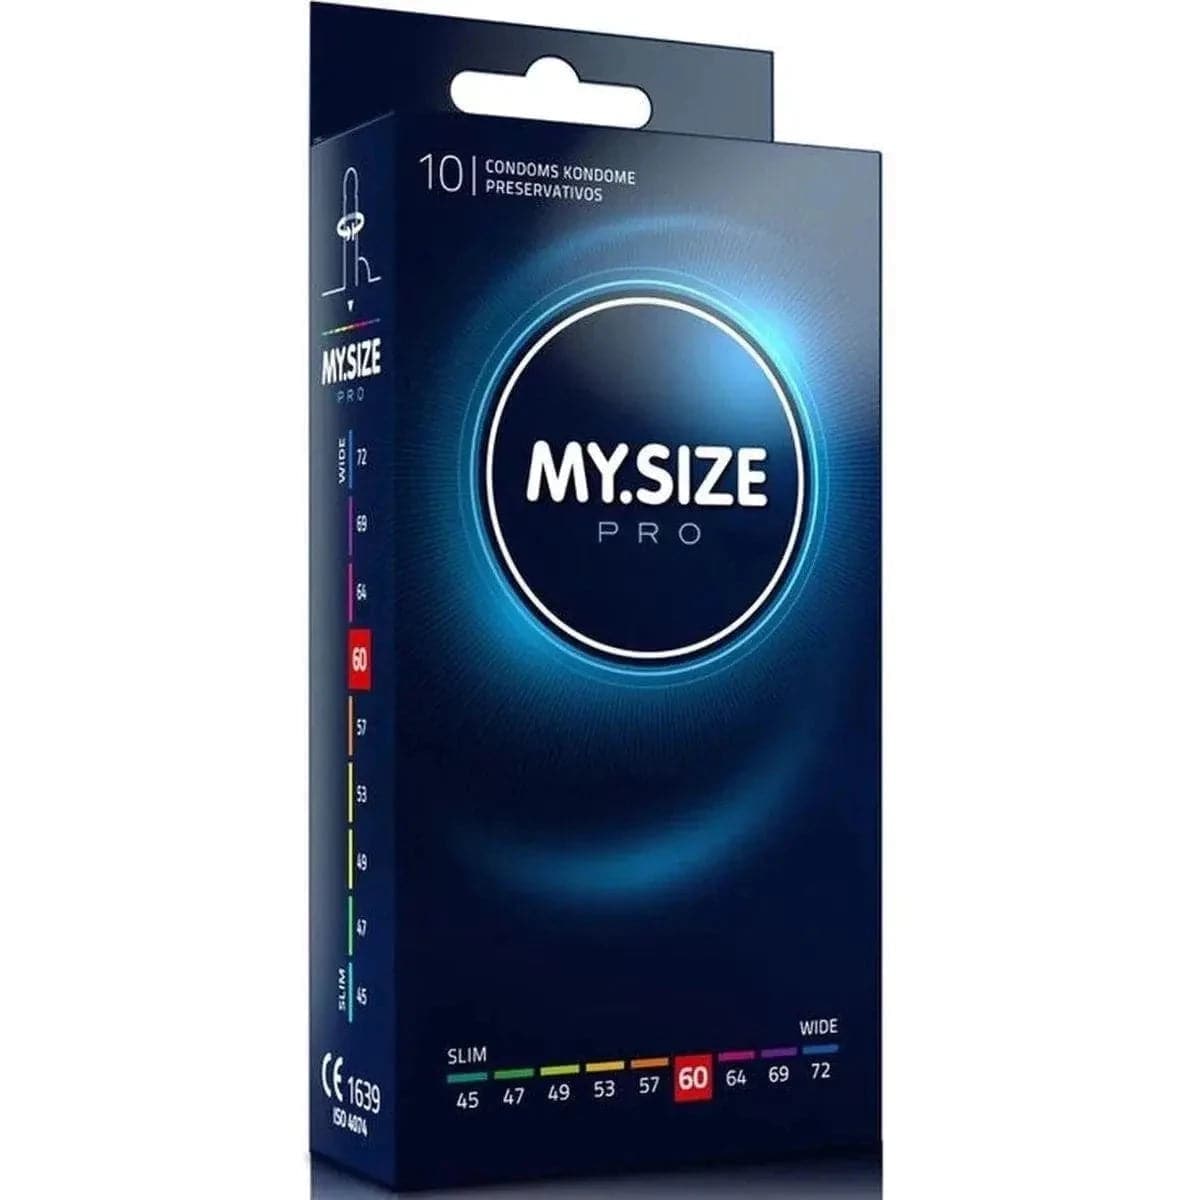 Preservativos XXL - My.Size 60mm - Melhor Ajuste e Sensibilidade